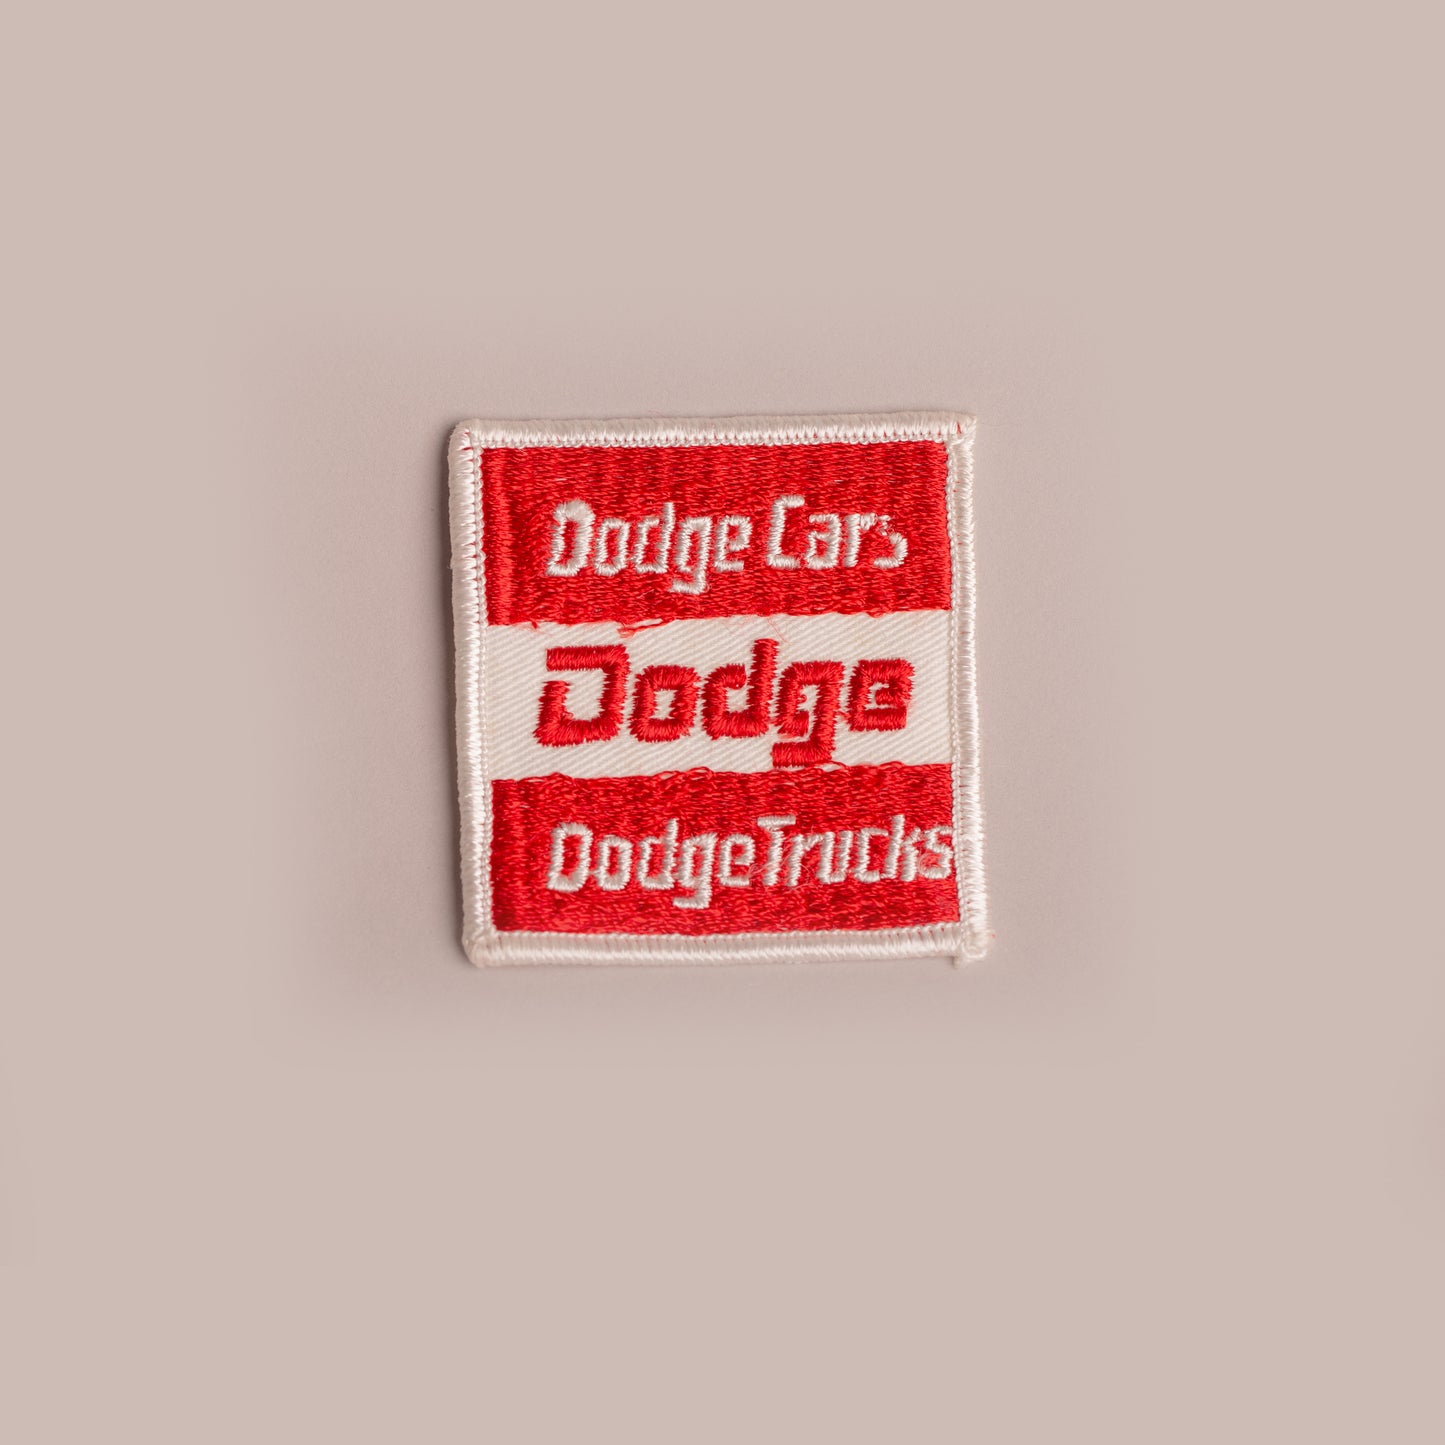 Vintage Patch - Dodge Cars Dodge Trucks